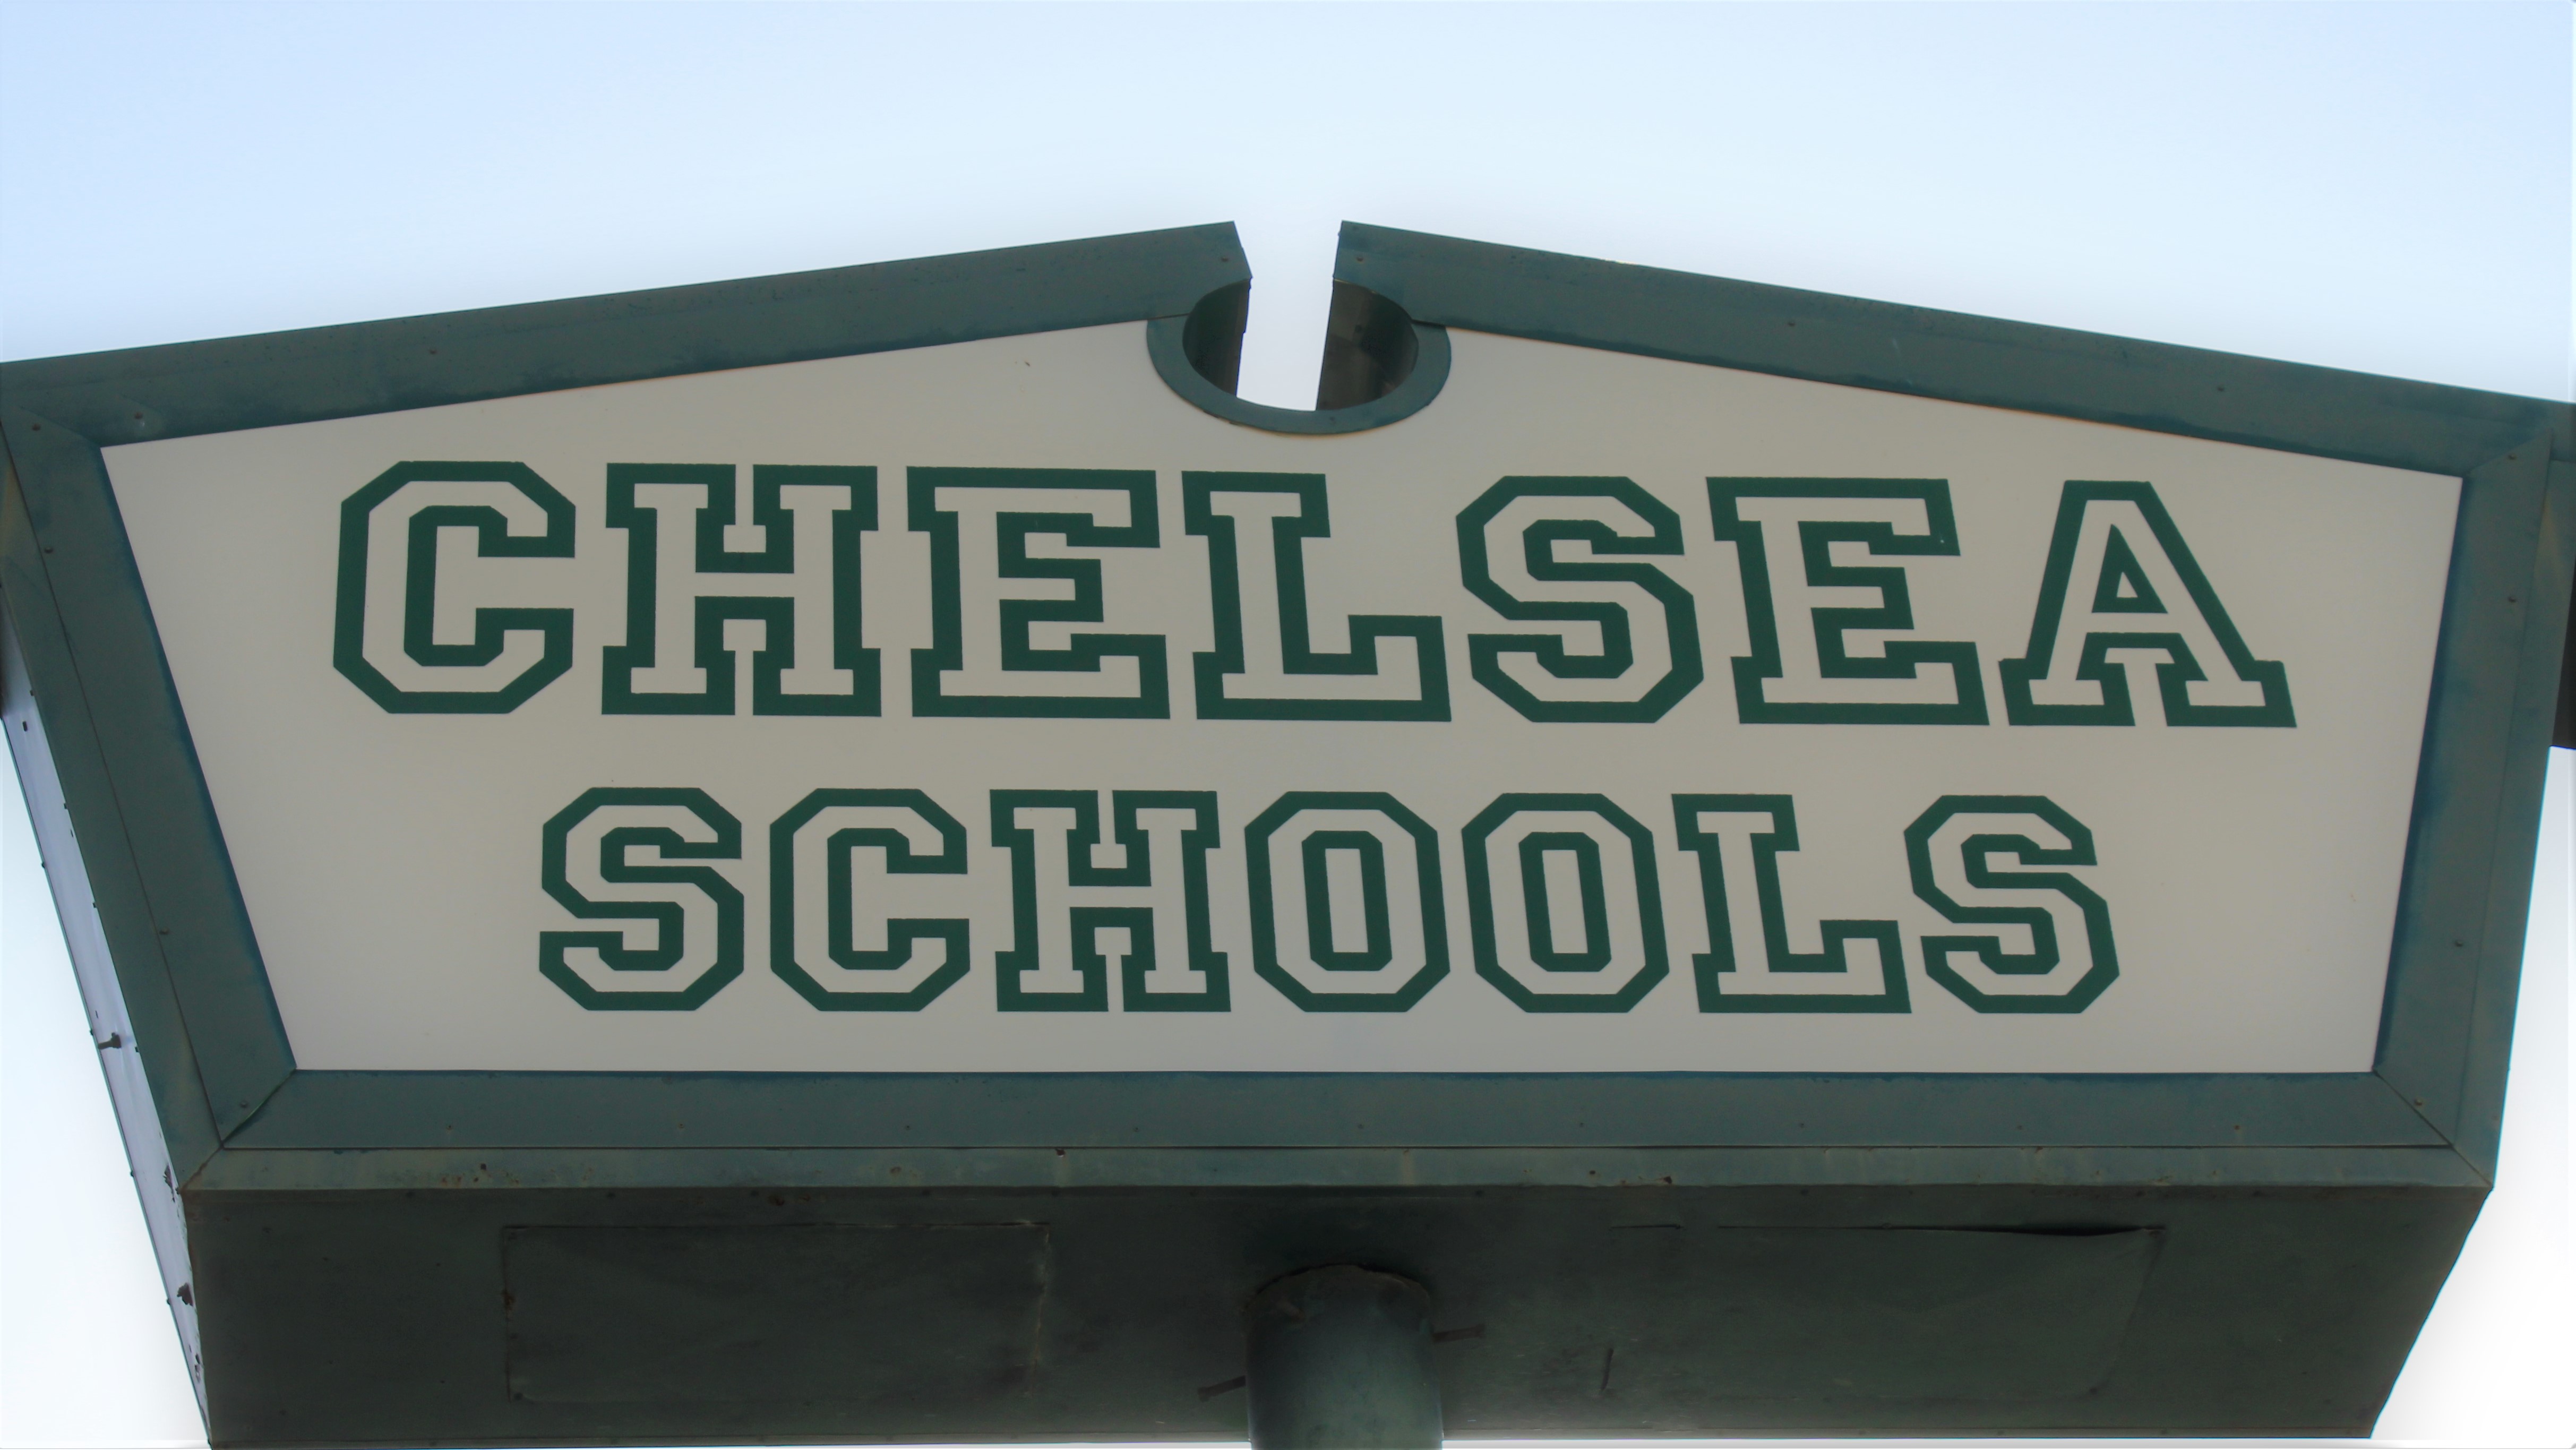 Chelsea Schools Sign